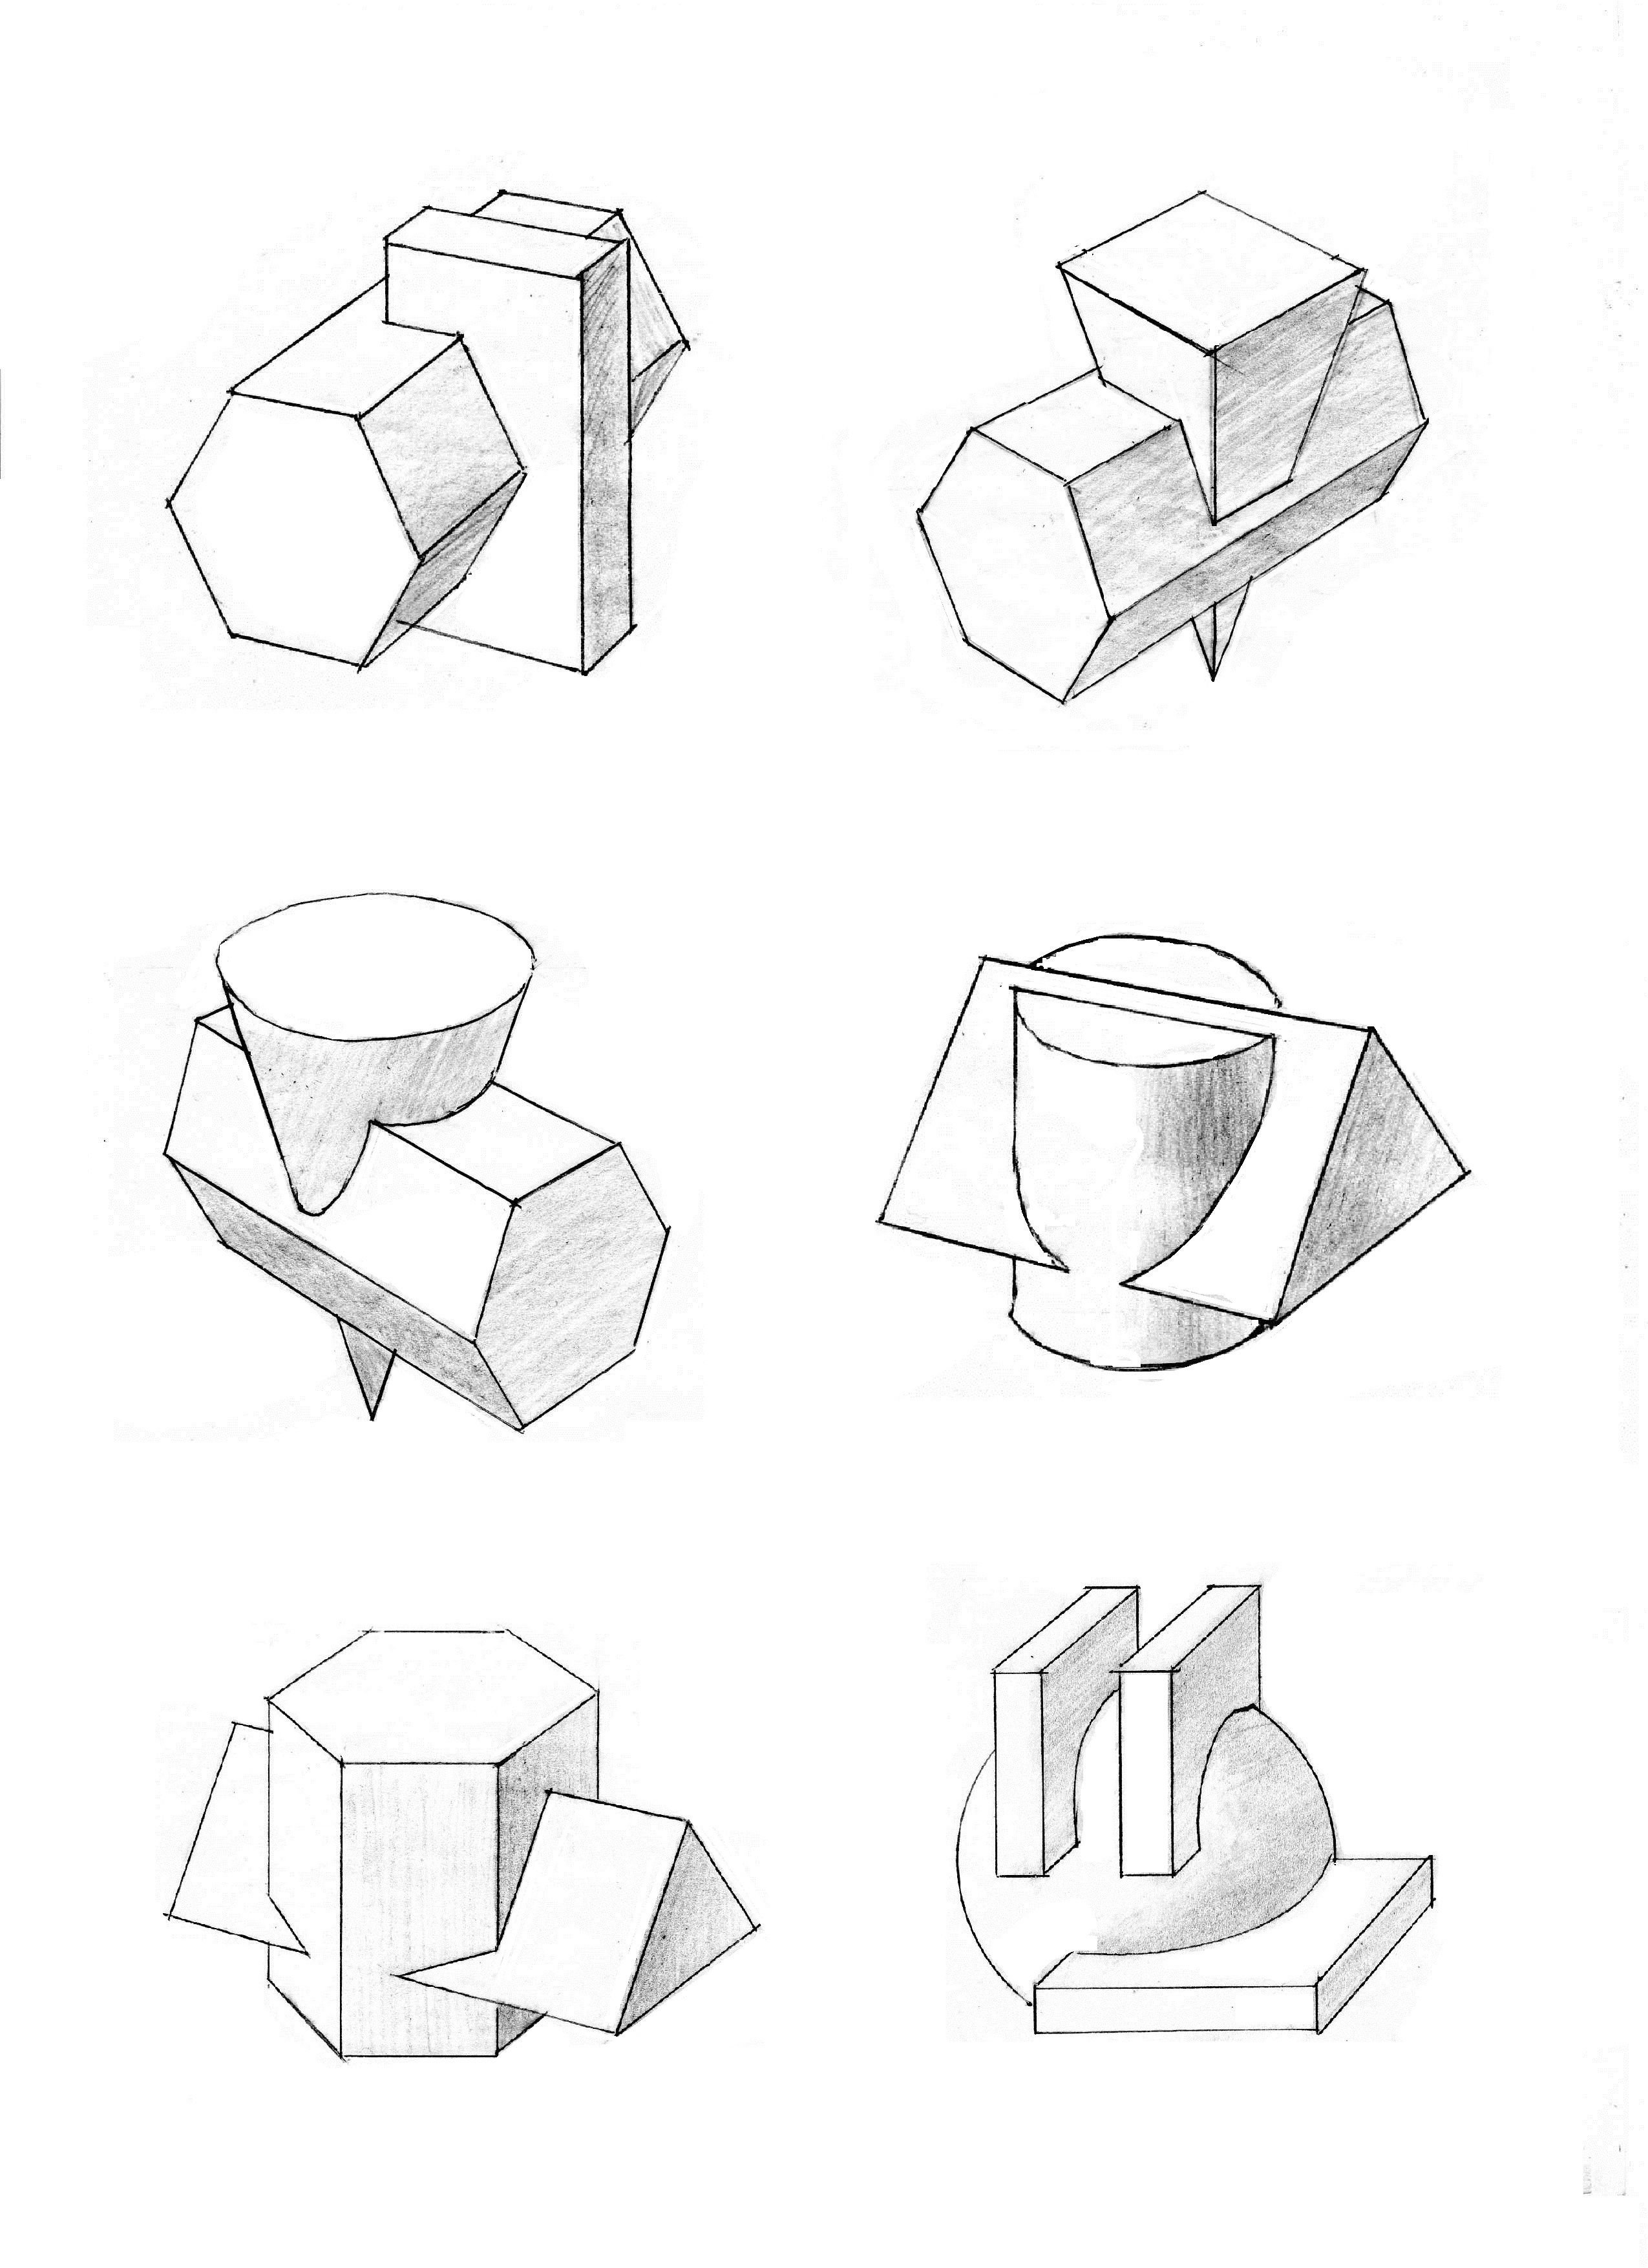 Пространственная композиция из геометрических фигур